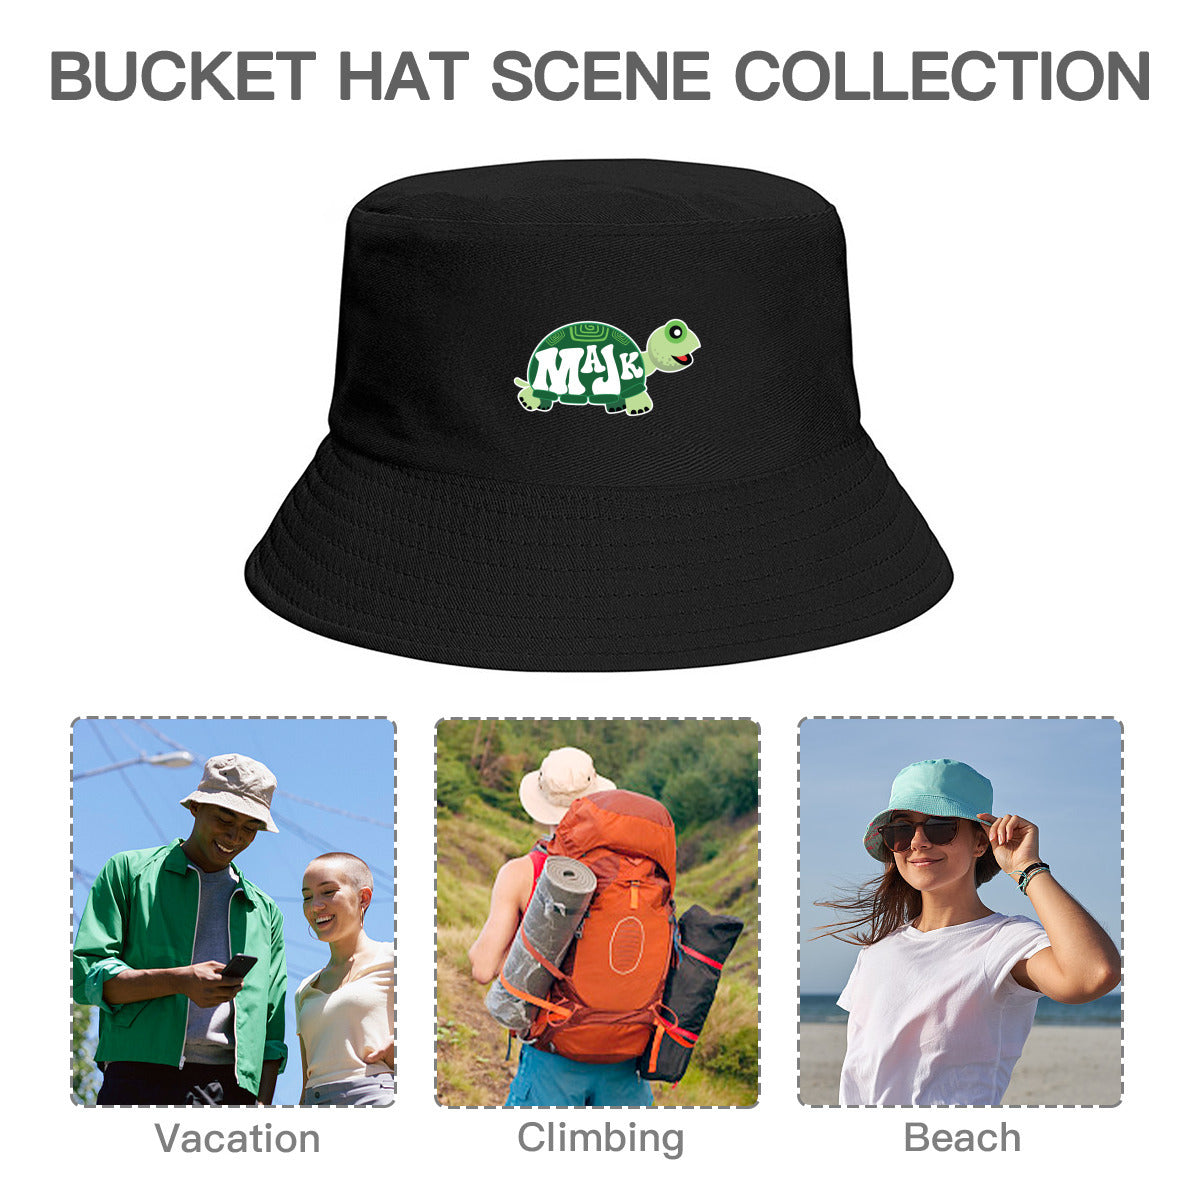 Bucket Hat "MaJK Turtle"